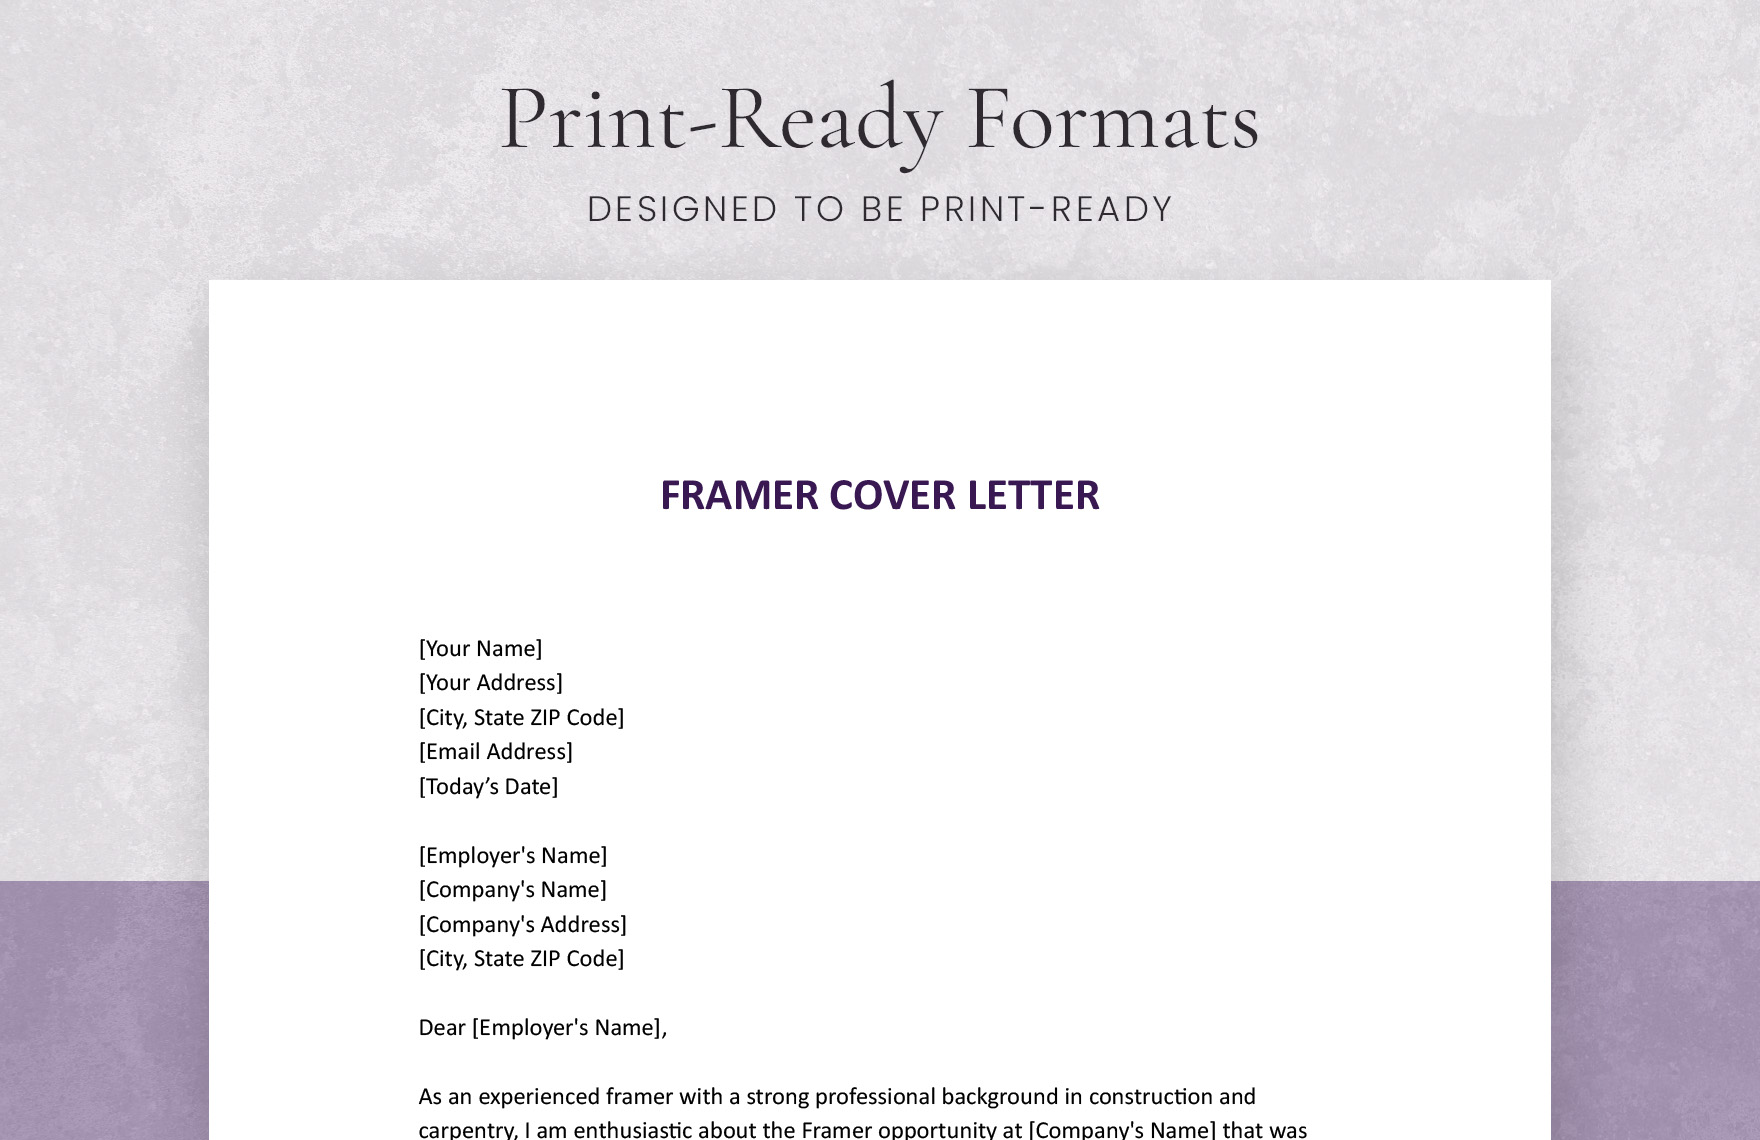 Framer Cover Letter